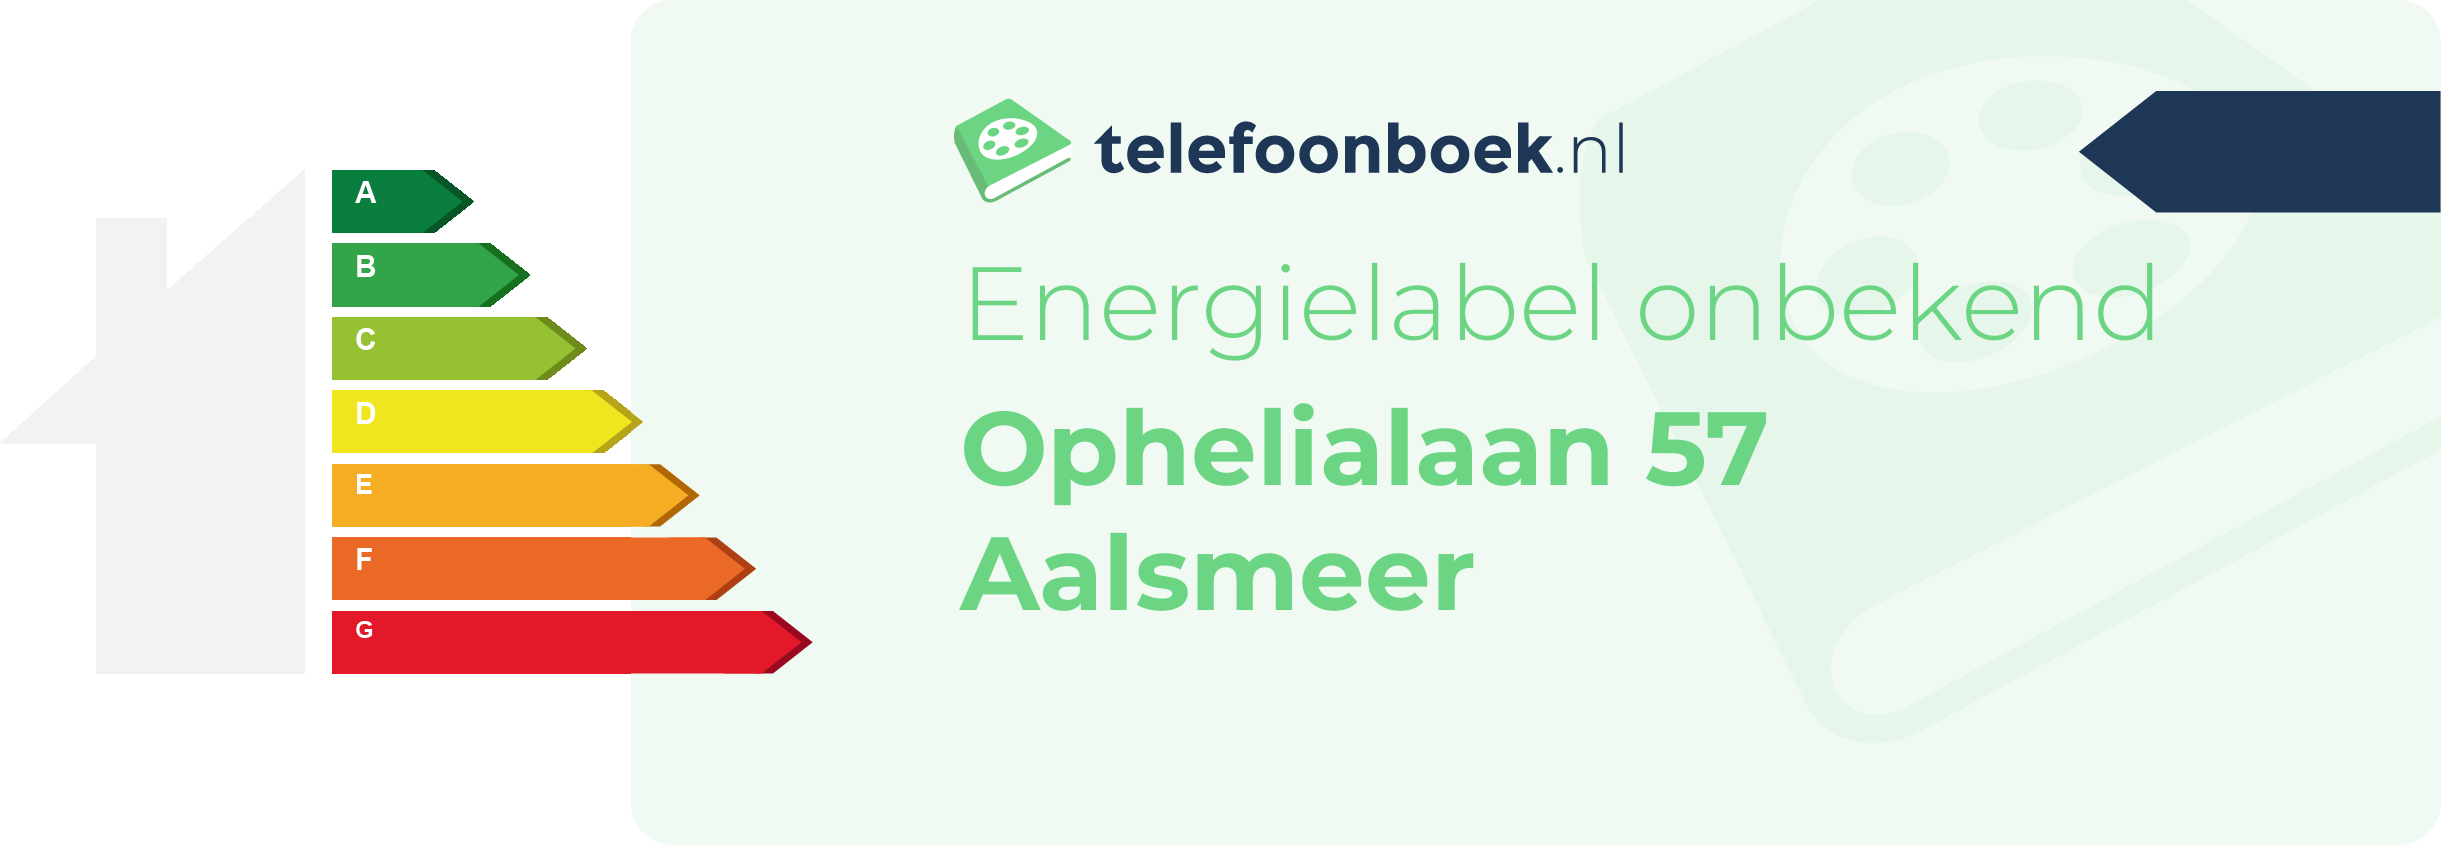 Energielabel Ophelialaan 57 Aalsmeer